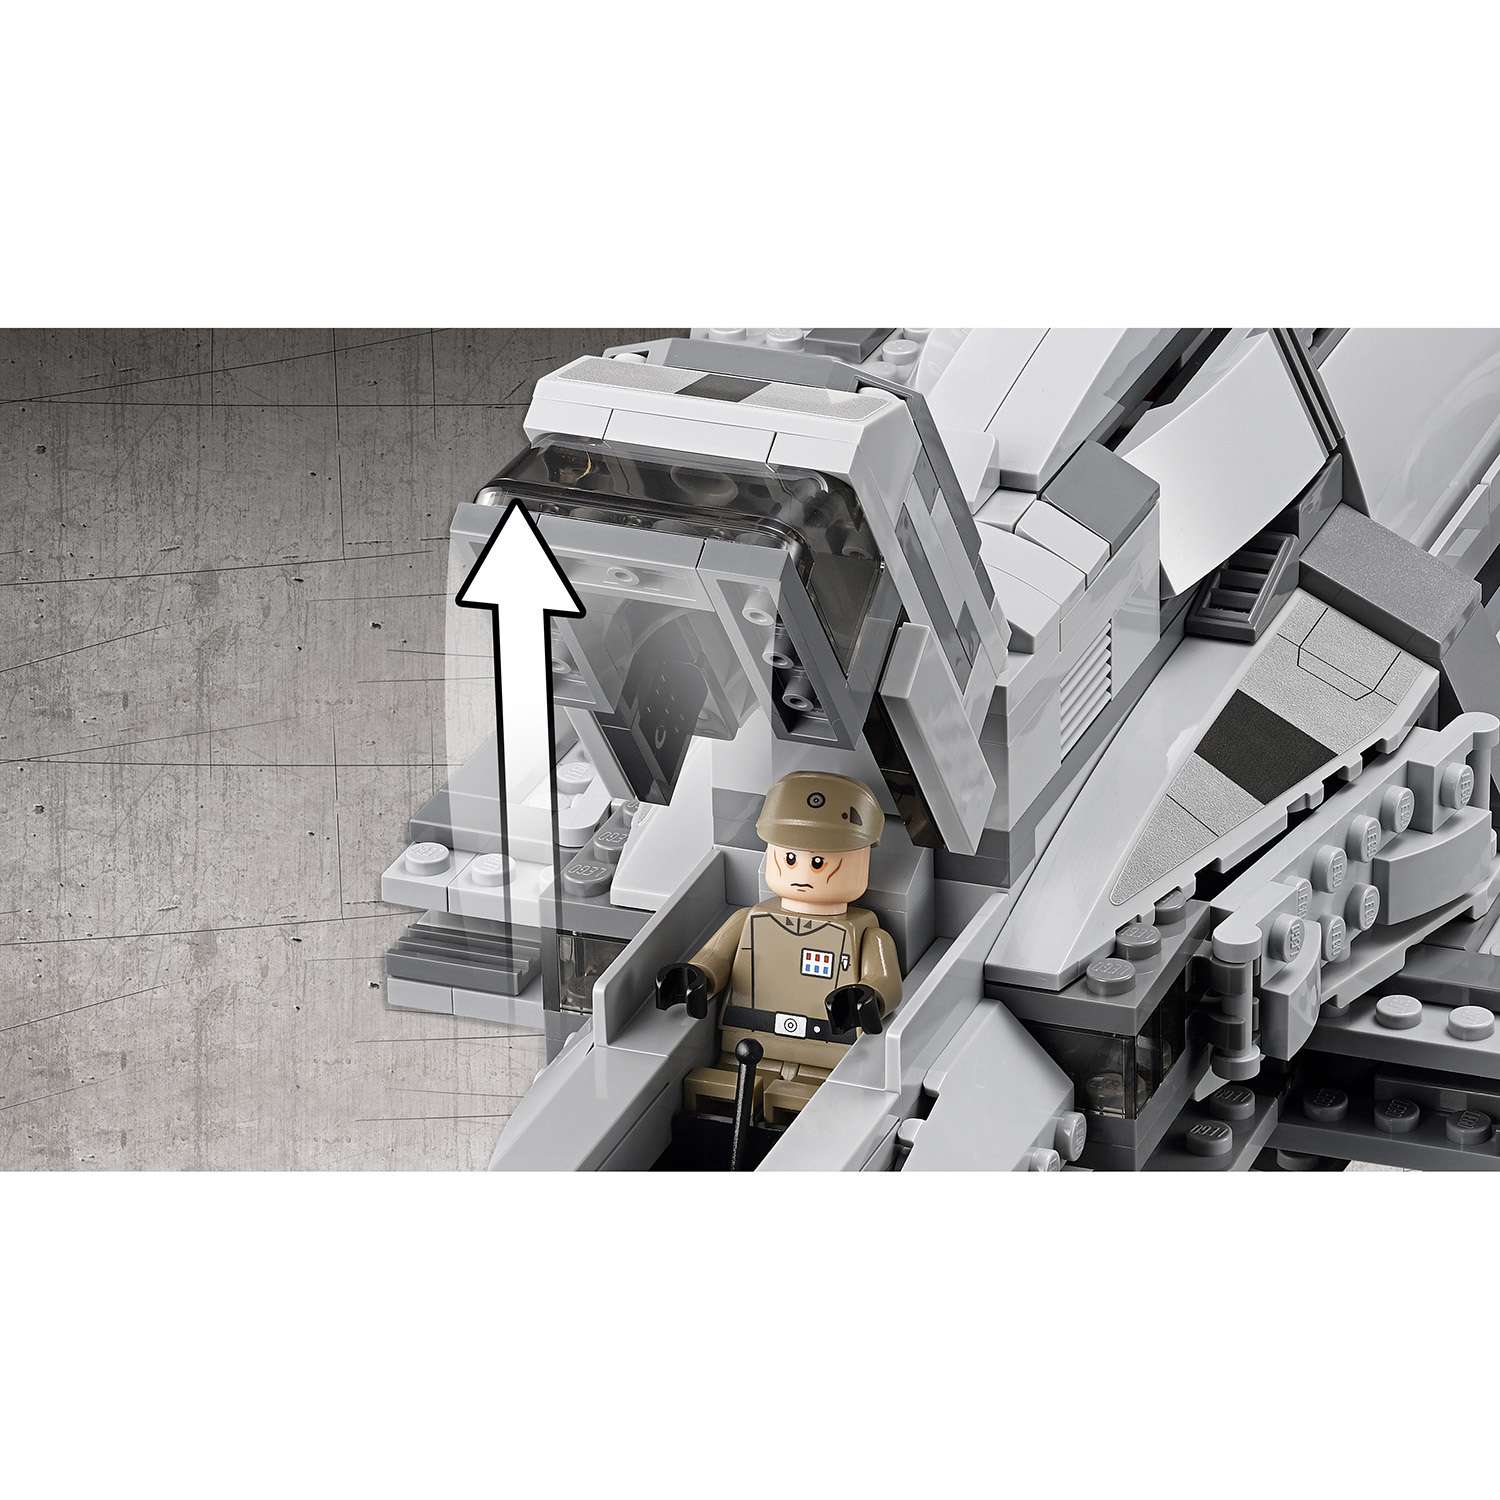 Конструктор LEGO Star Wars TM Имперский десантный корабль™ (Imperial Assault Carrier™) (75106) - фото 6